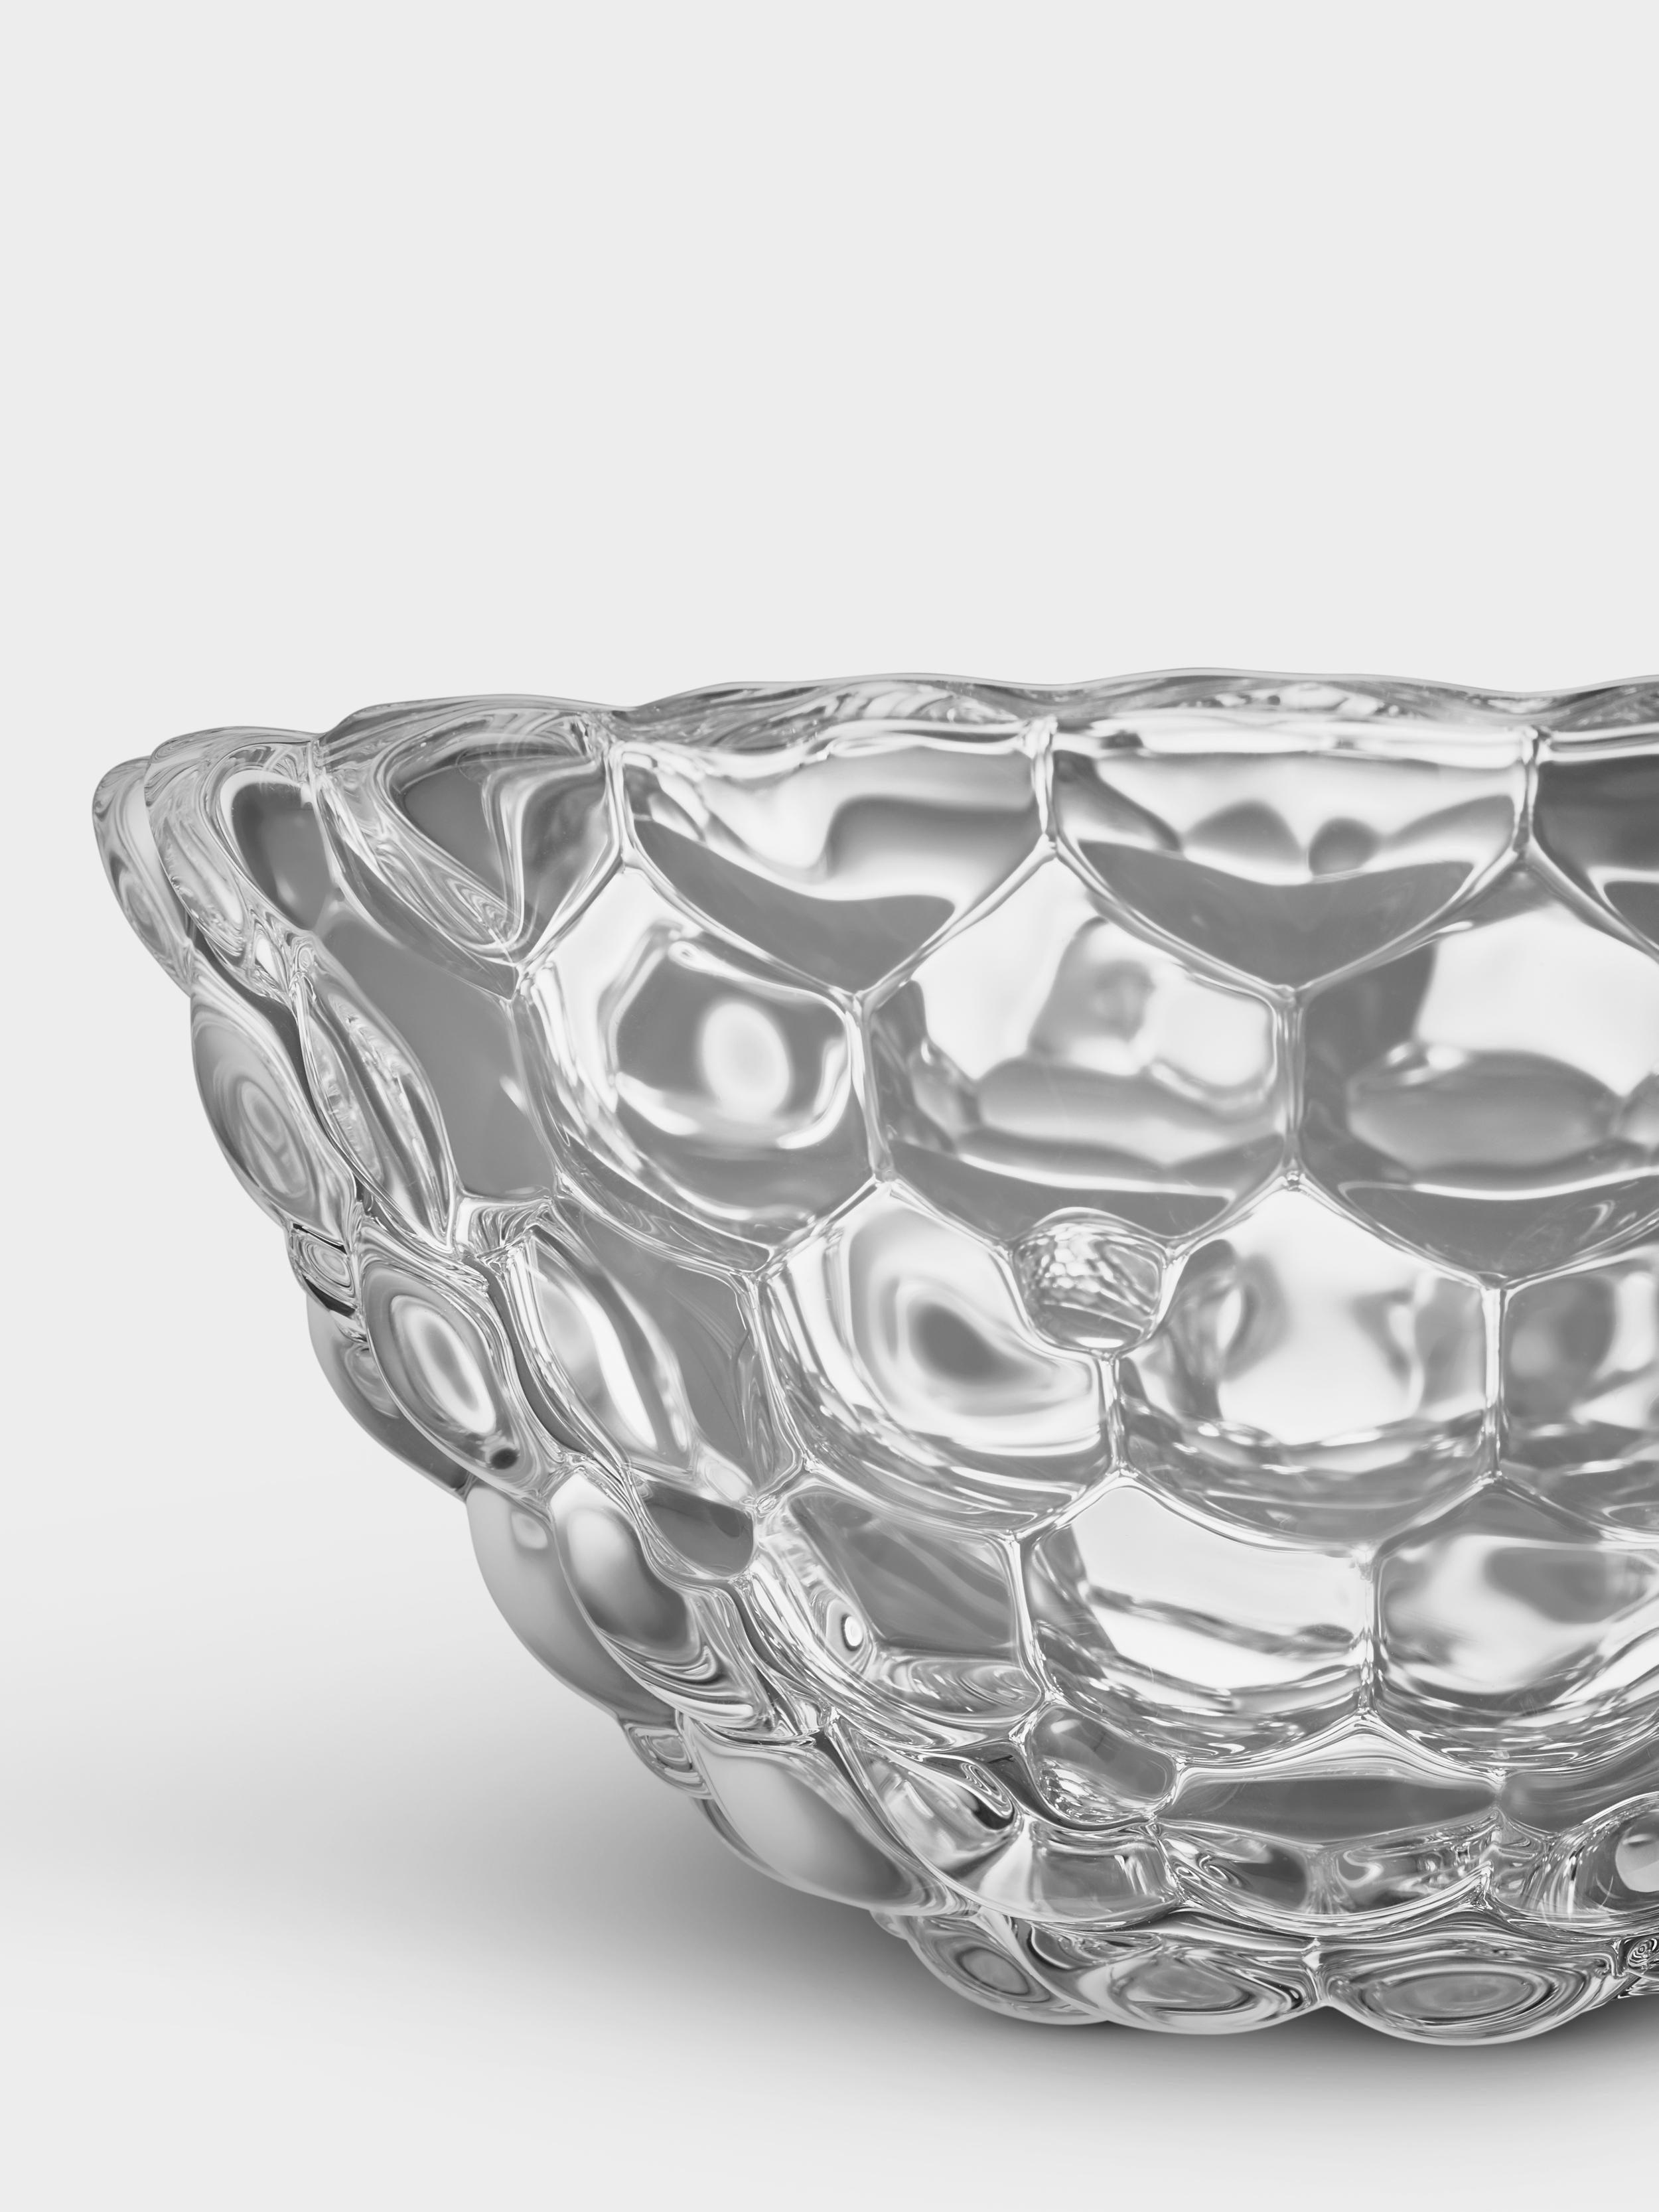 orrefors crystal bowl